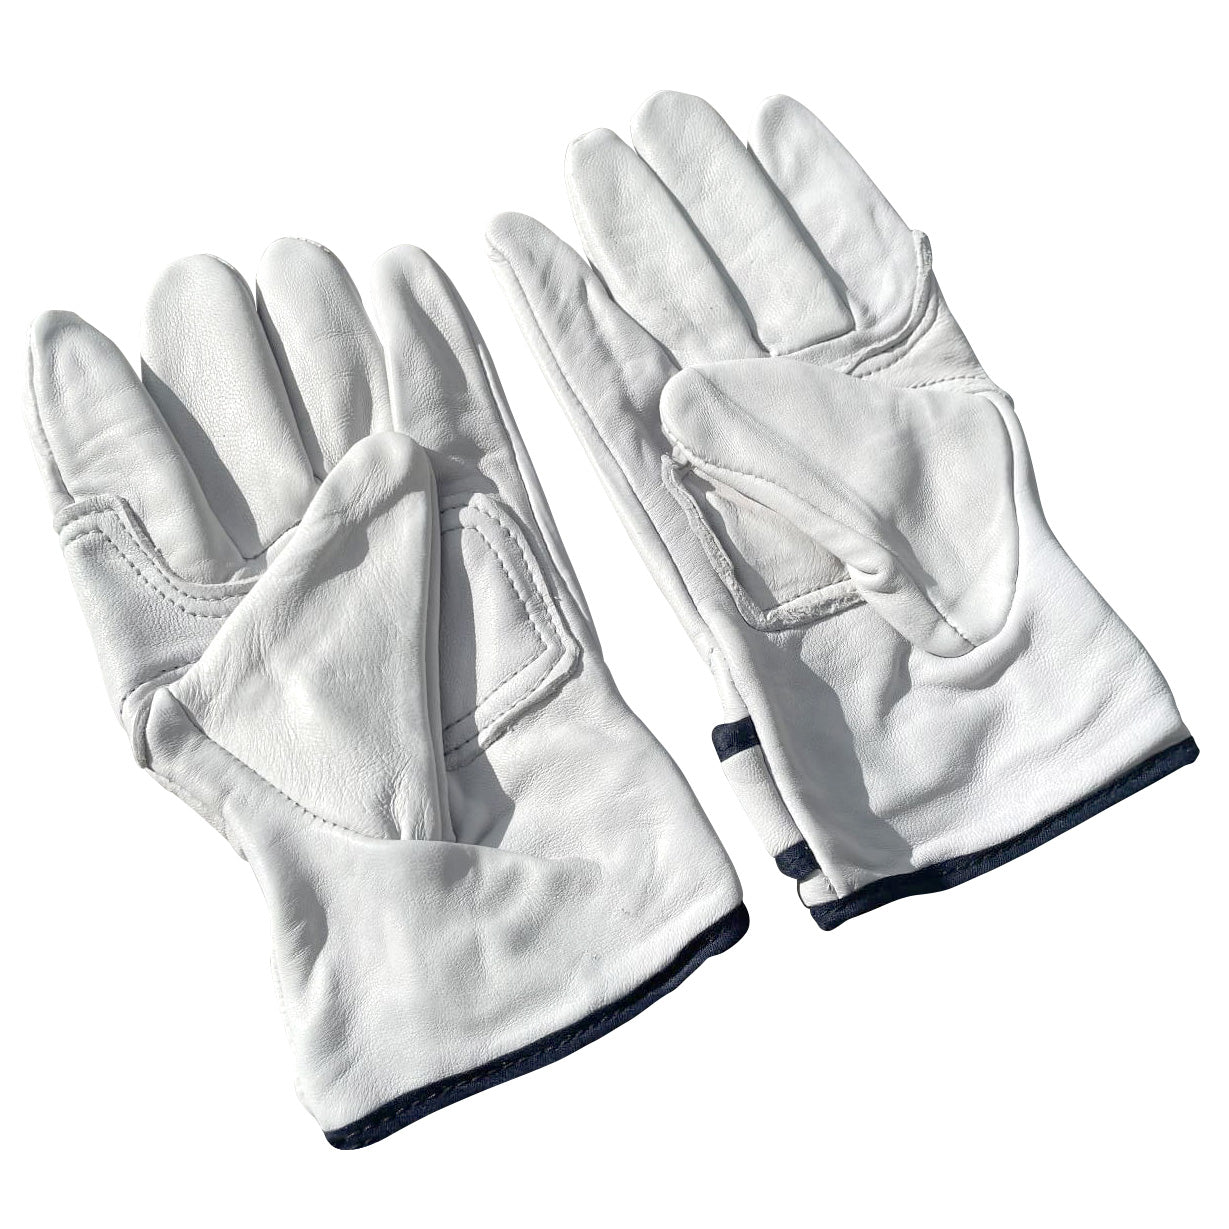 https://sandbaggy.com/cdn/shop/products/Full-Grain-Sheepskin-Leather-Work-Gloves_19.jpg?v=1678313755